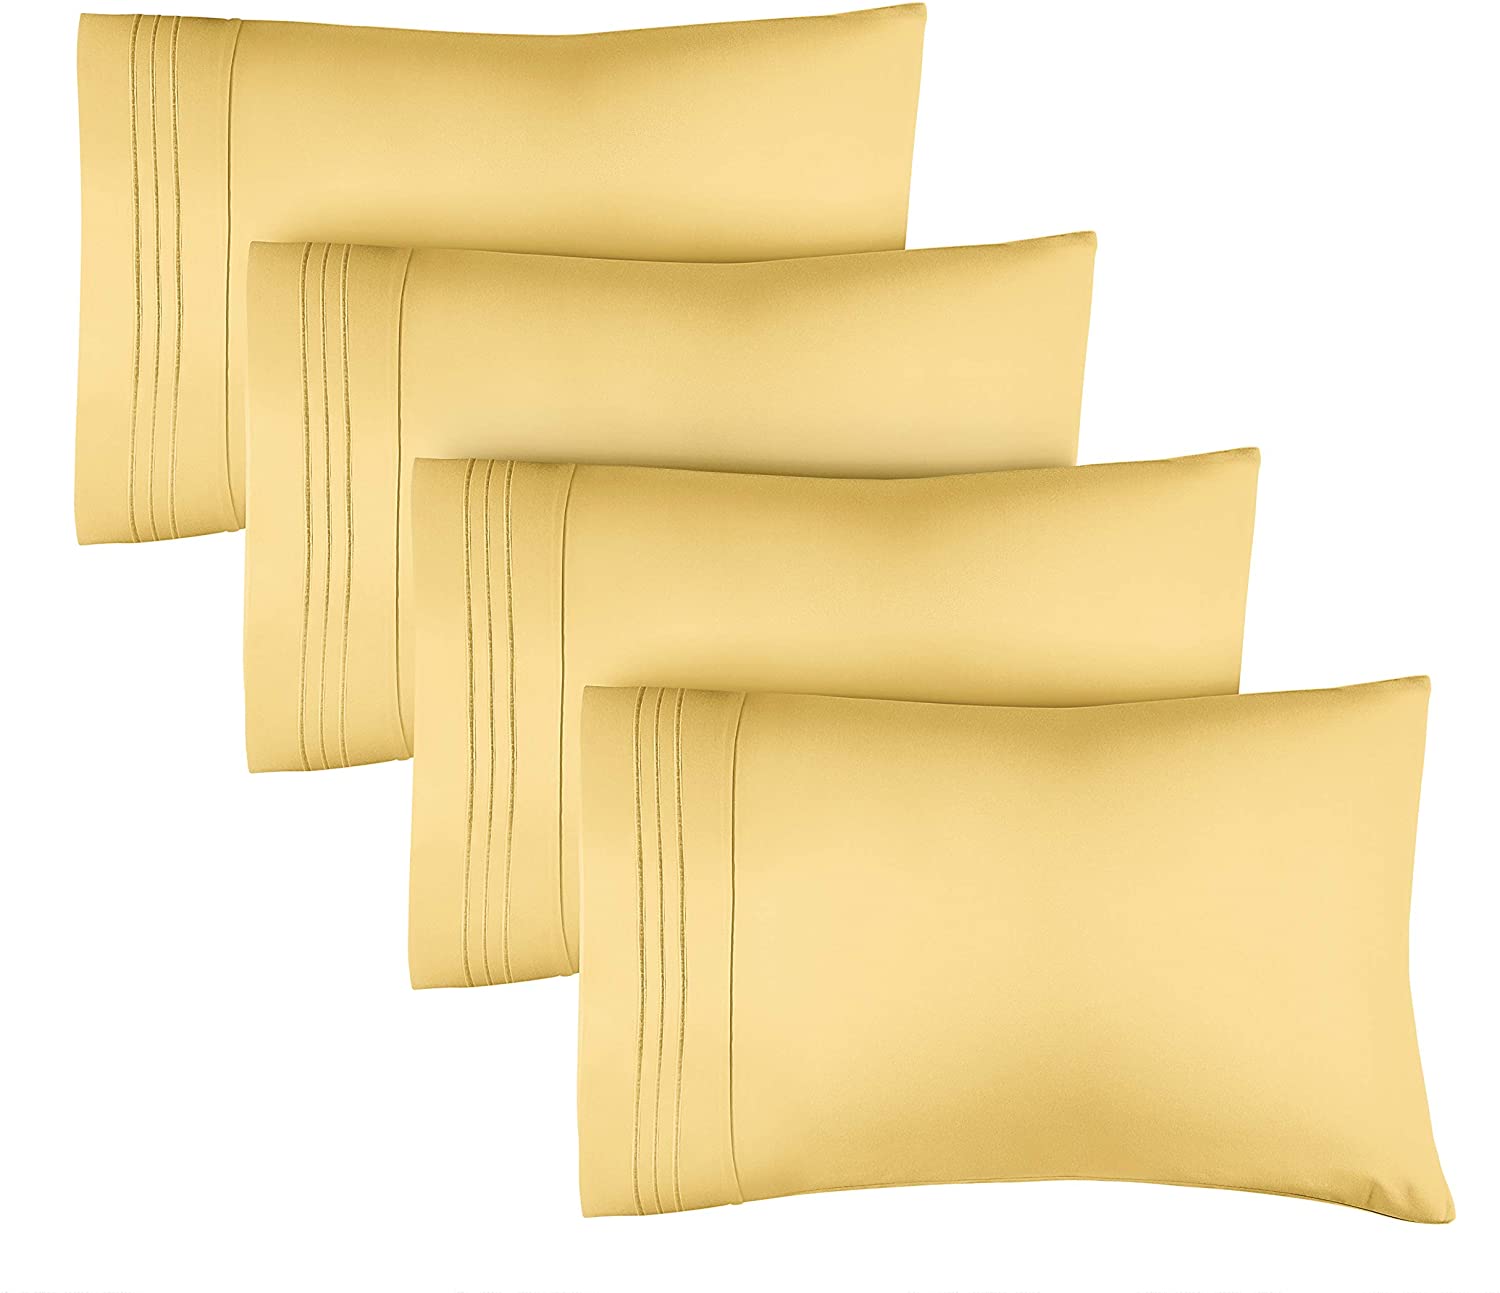 tes 4 Pillowcase Set - Yellow